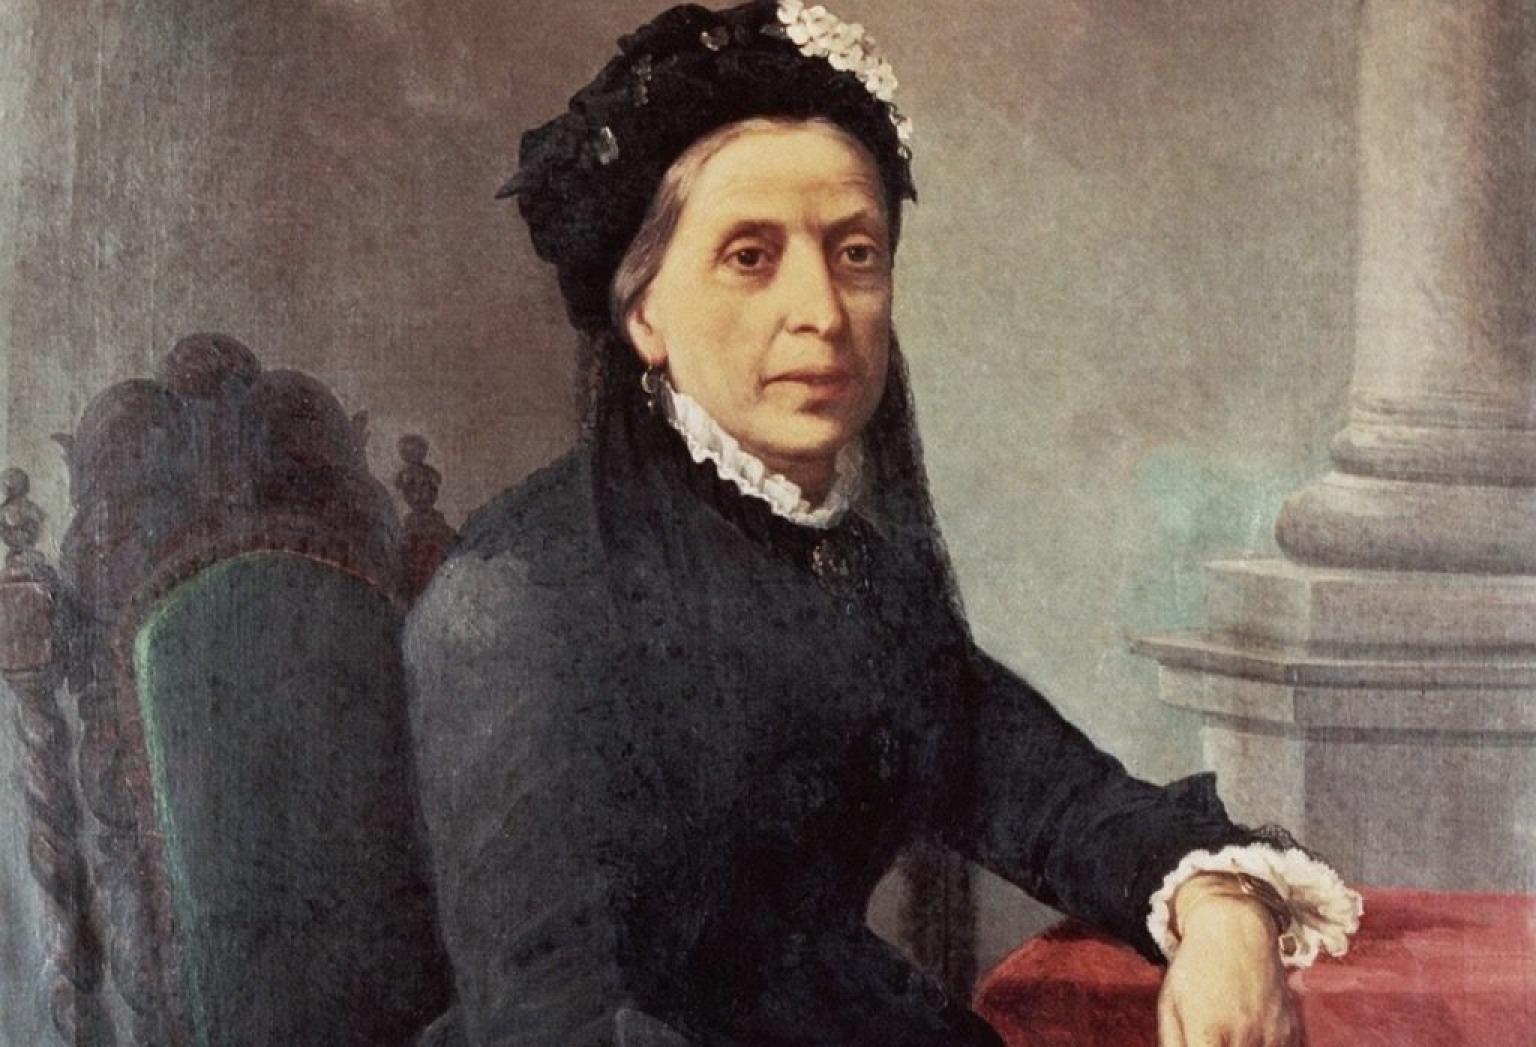 Retrato de época de una mujer distinguida, Doña Antonia Ferreira Douro, pionera de la industria vinícola portuguesa.